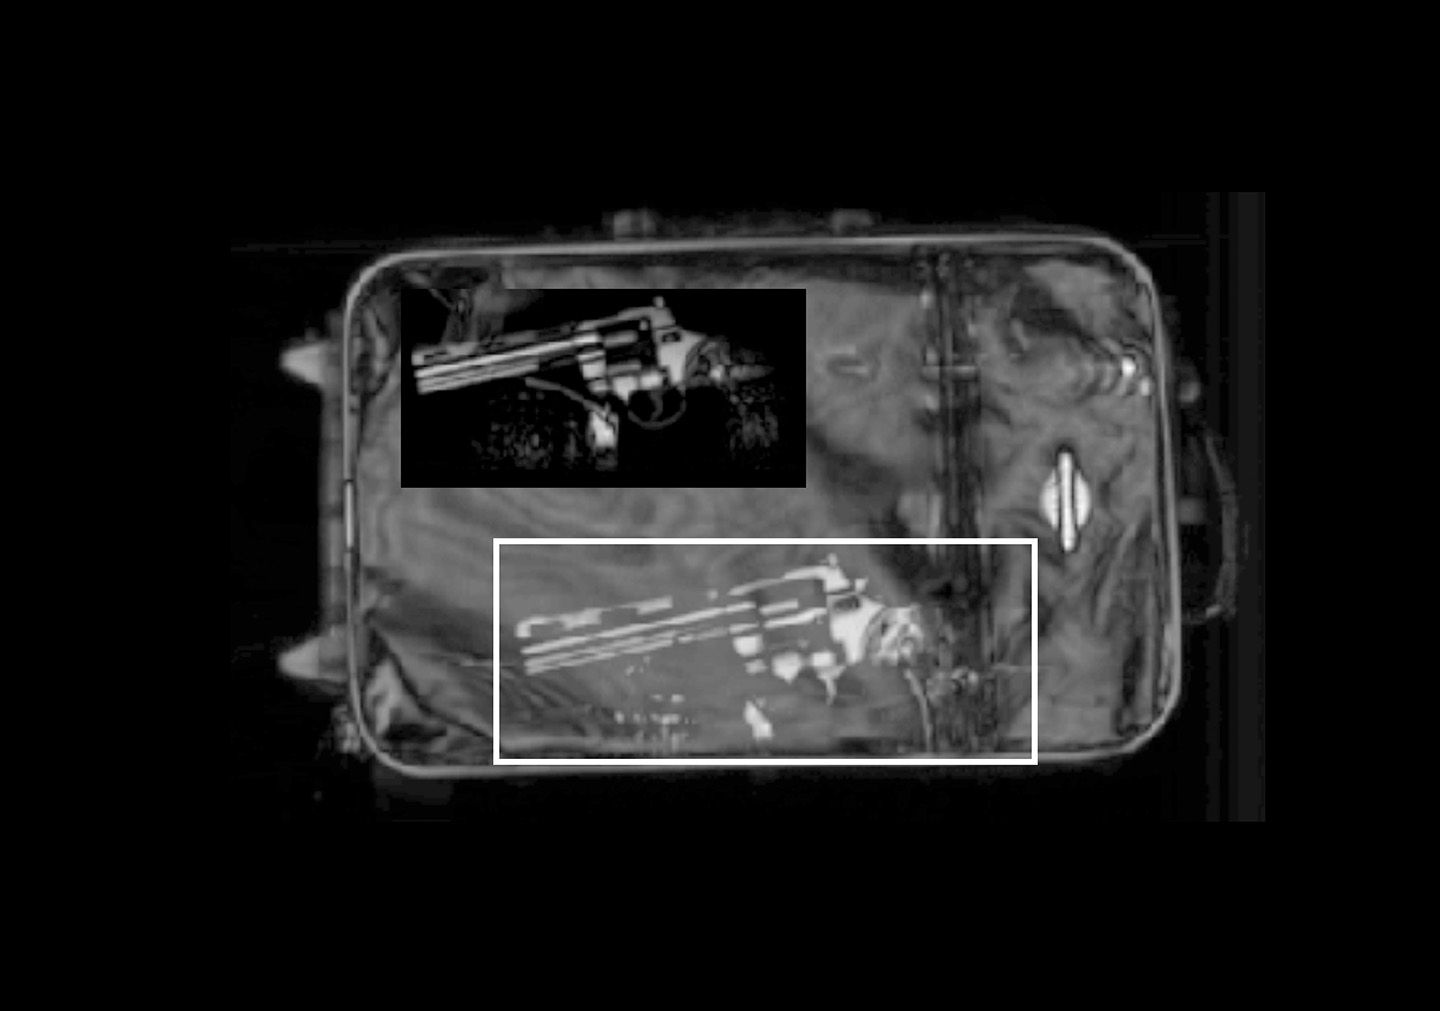 Durchleuchtend gescannter Koffer als Gesamtvisualisierung (Summe aller Schichten) mit enthaltener Handfeuerwaffe (separate Tiefenschicht).